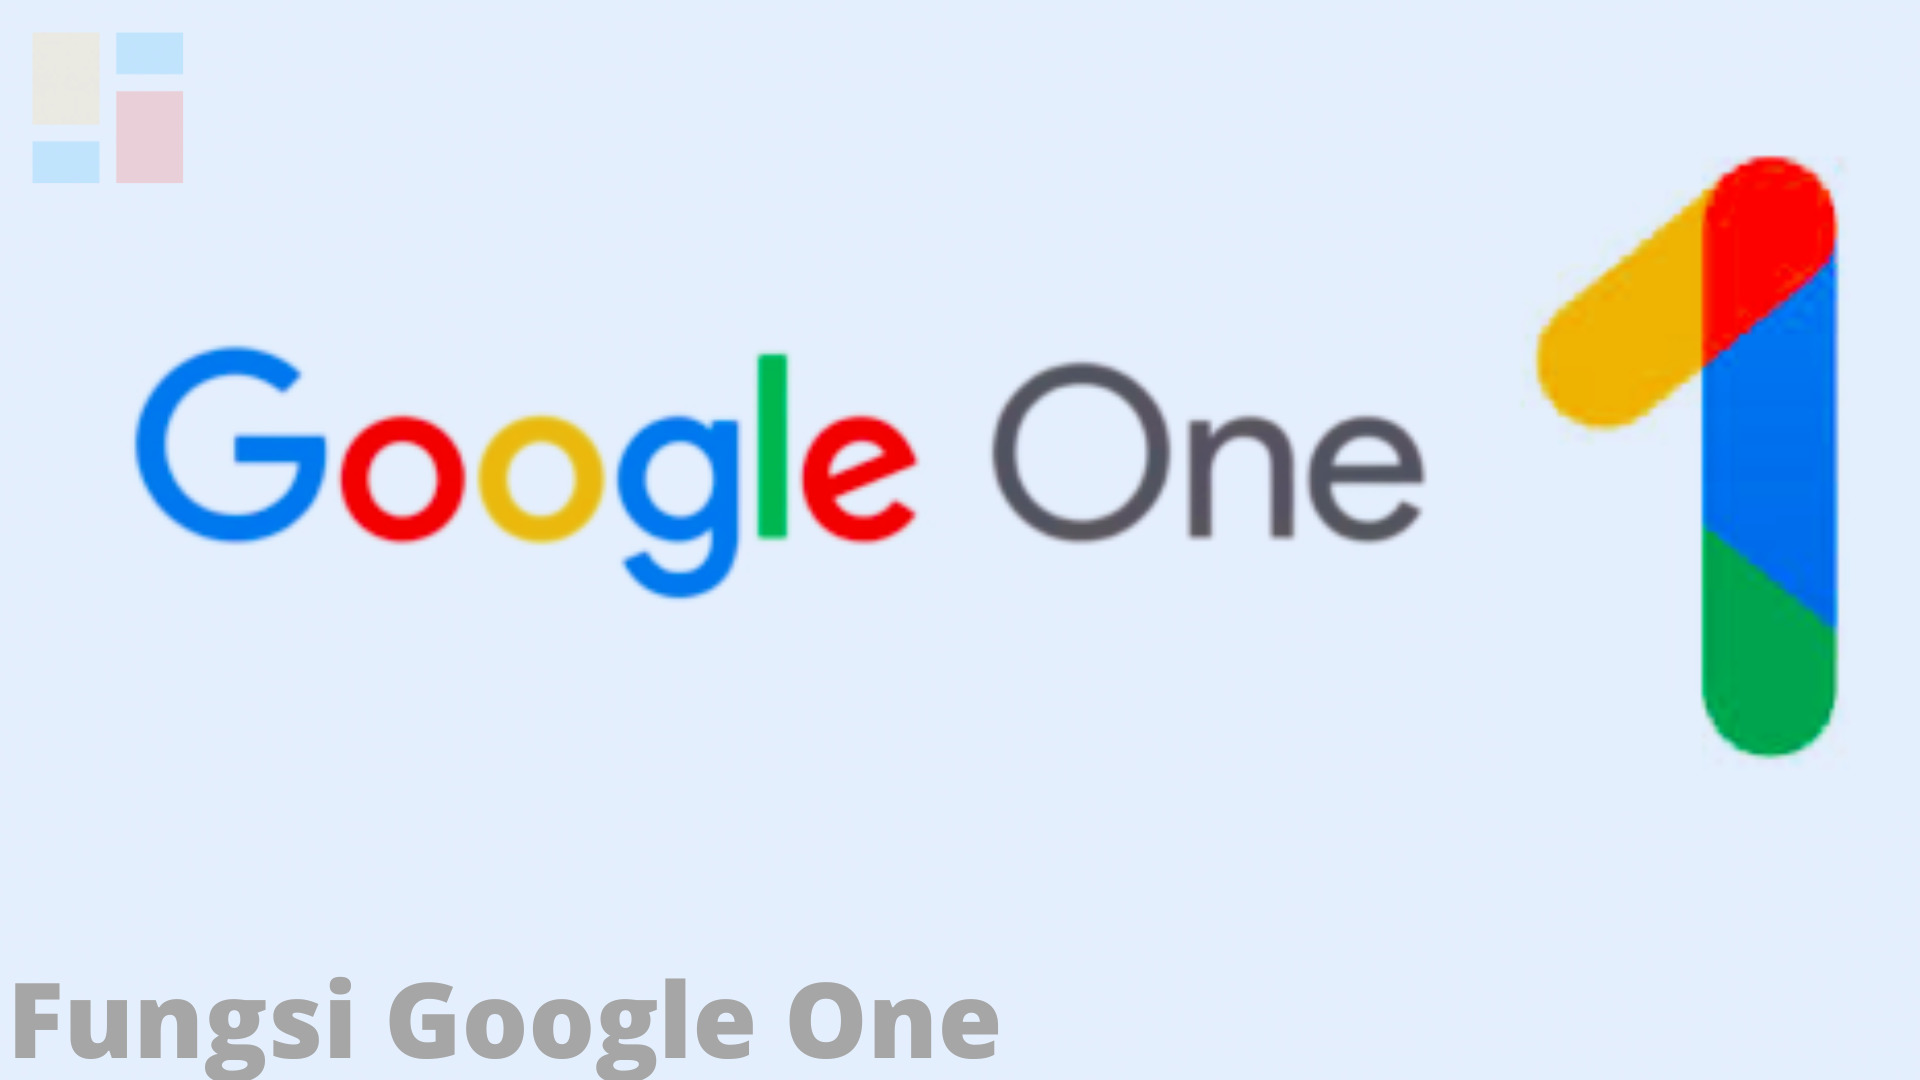 Fungsi Google One